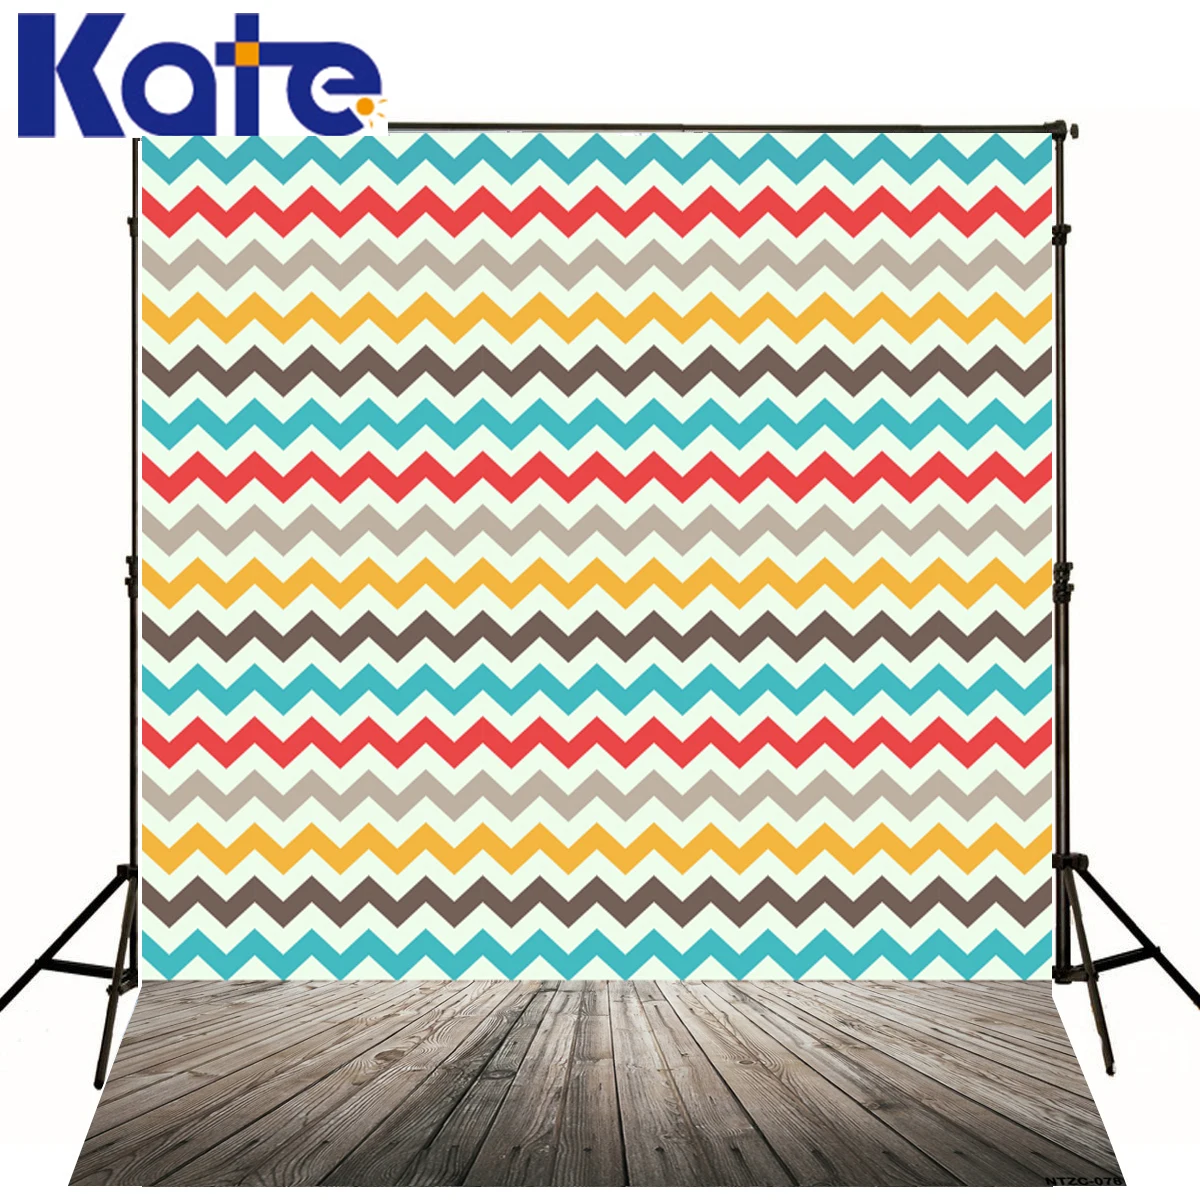 Kate Цветной волнистые полосы фонов Фотография деревянный пол цифровая печать фотографические Задний план для Аксессуары для фотостудий j01681